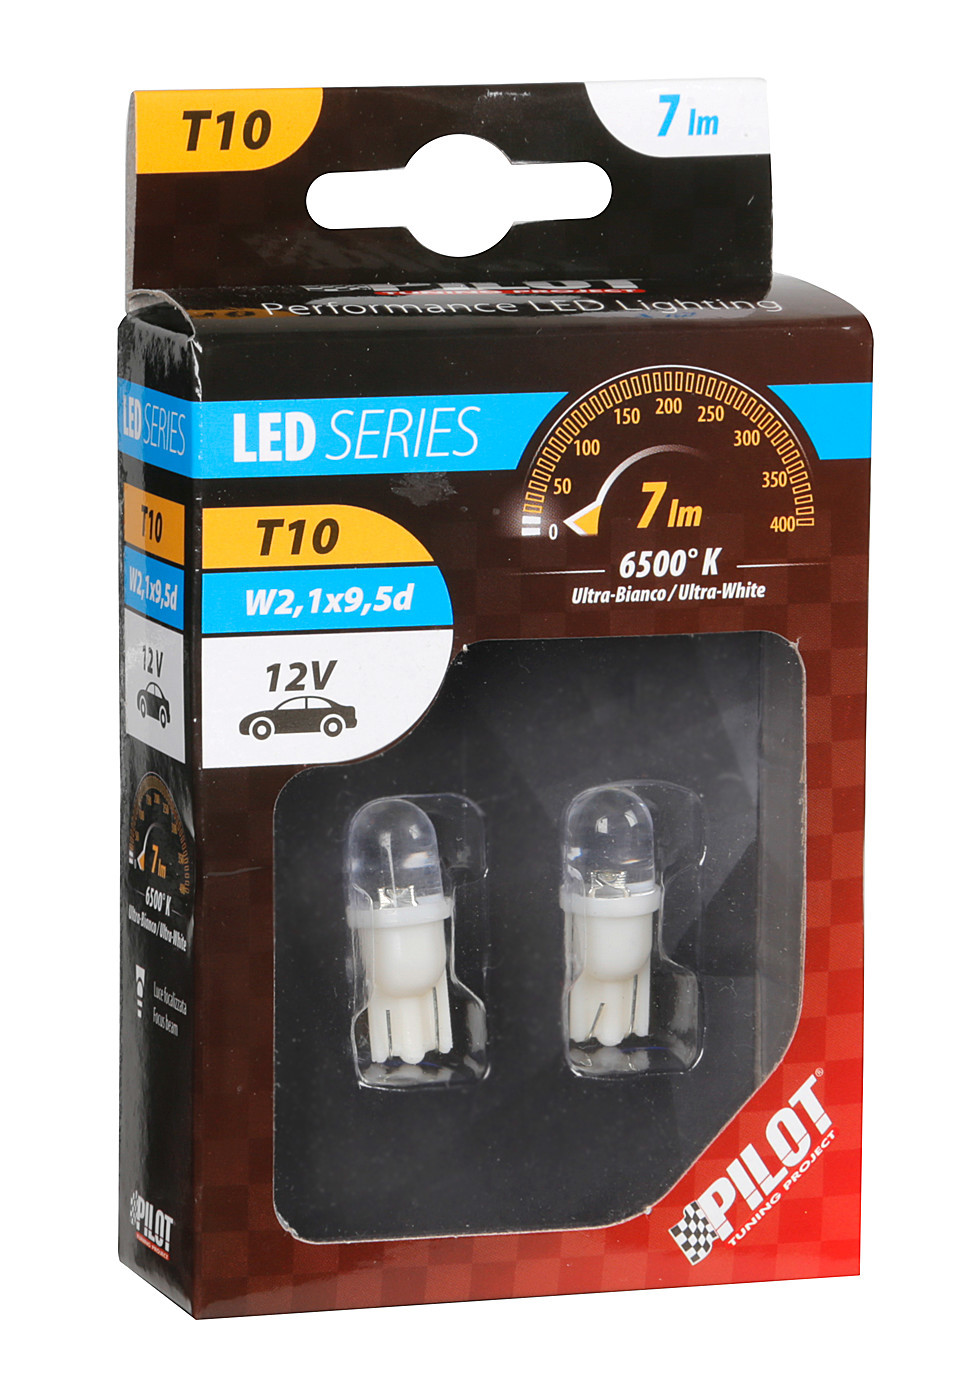 12V Colour-Led, lamp 1 Led - (T10) - W2,1x9,5d - 2 pc thumb